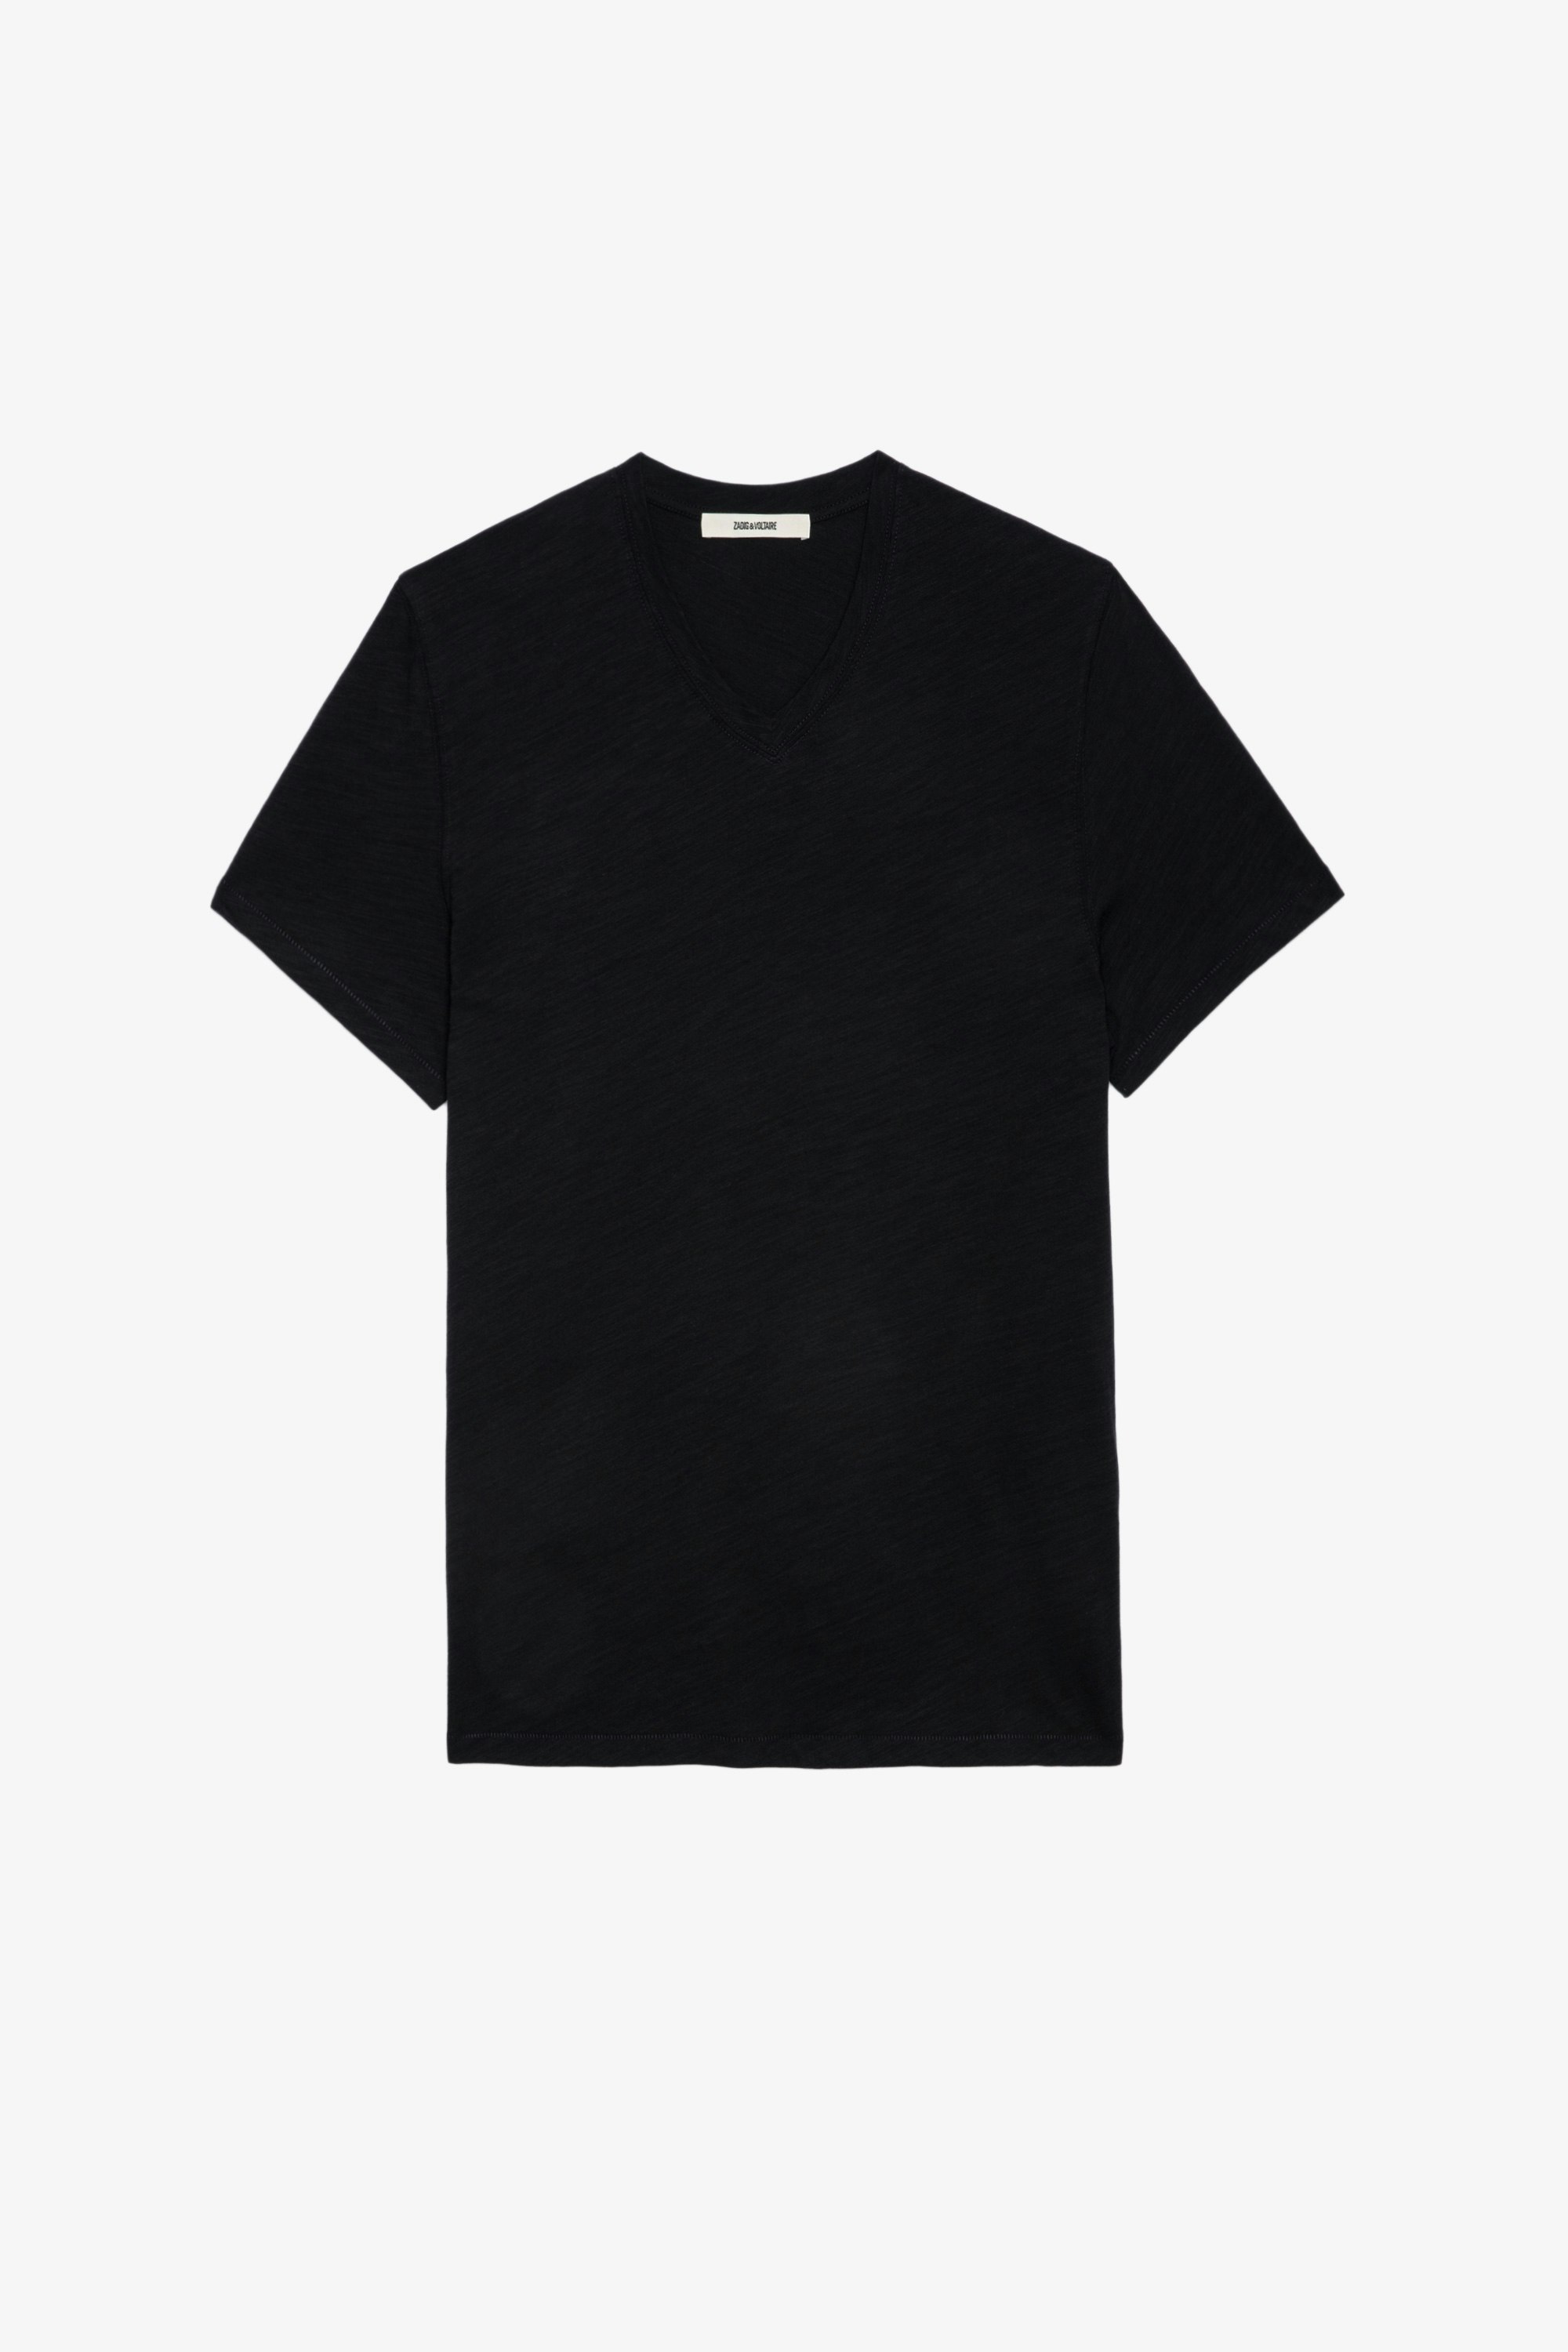 Stocky Slub T-shirt Men’s Stocky black slub T-shirt